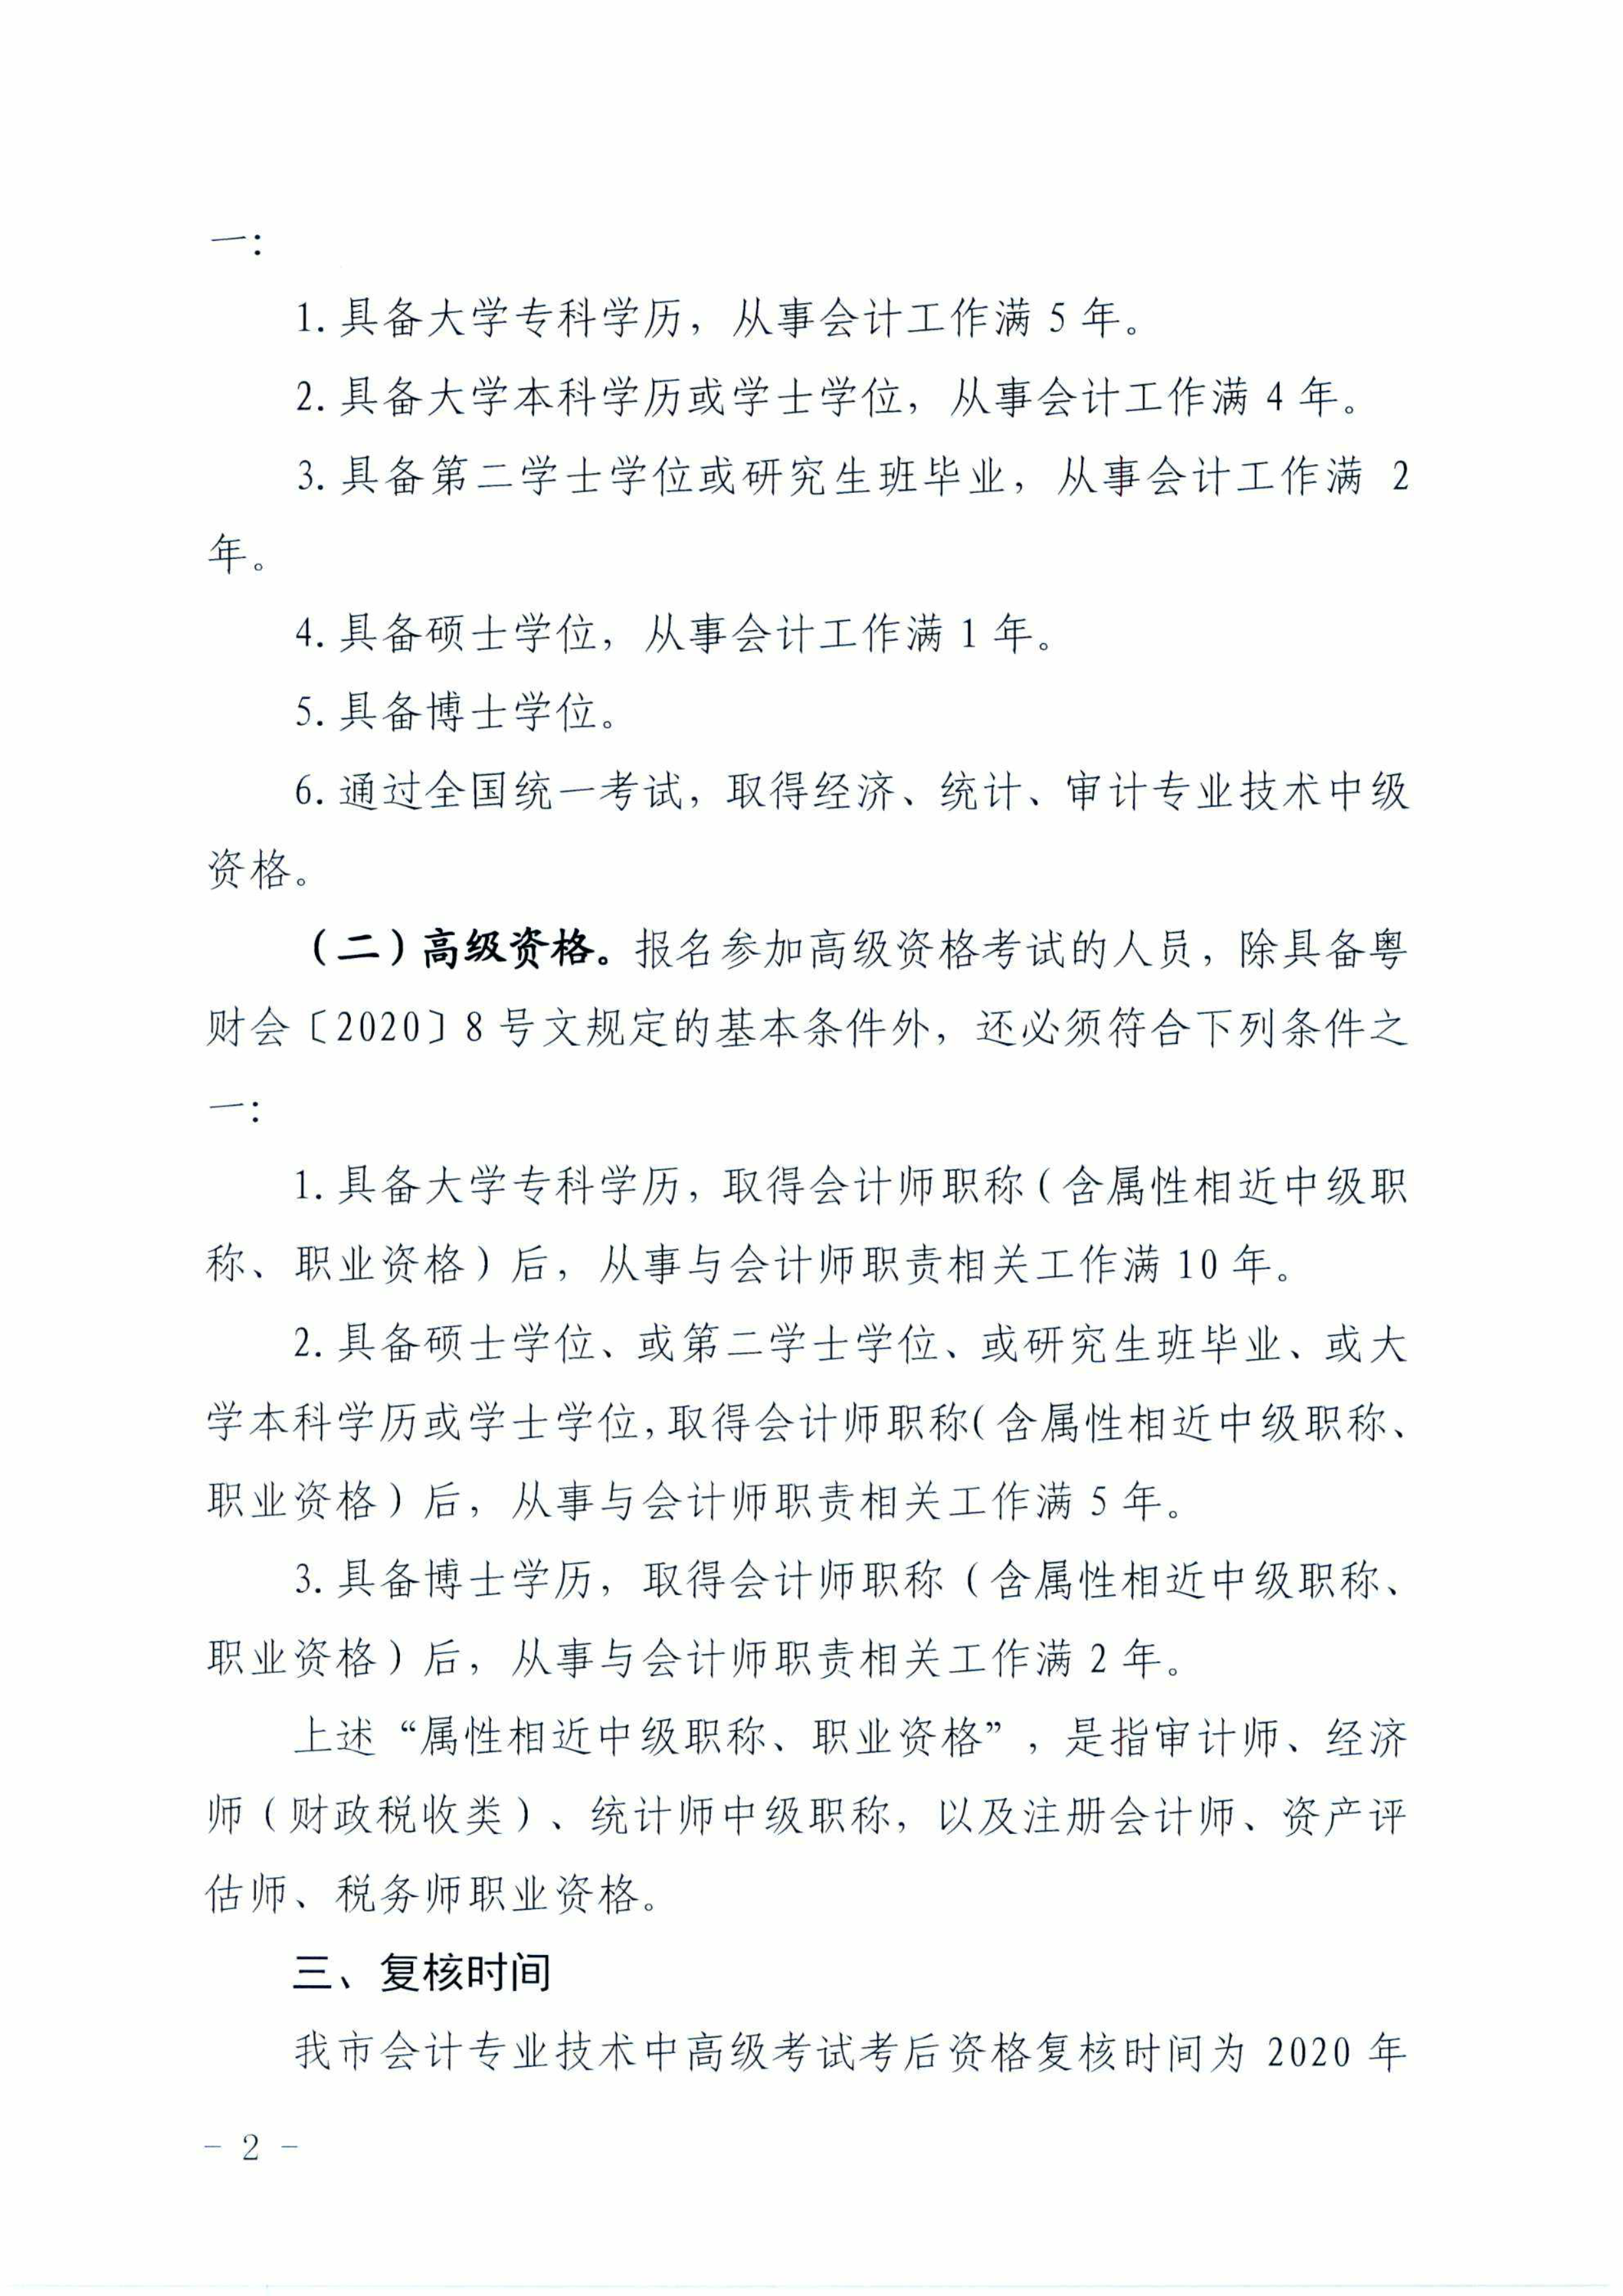 广东梅州2020中级会计职称考试考后资格审核通知